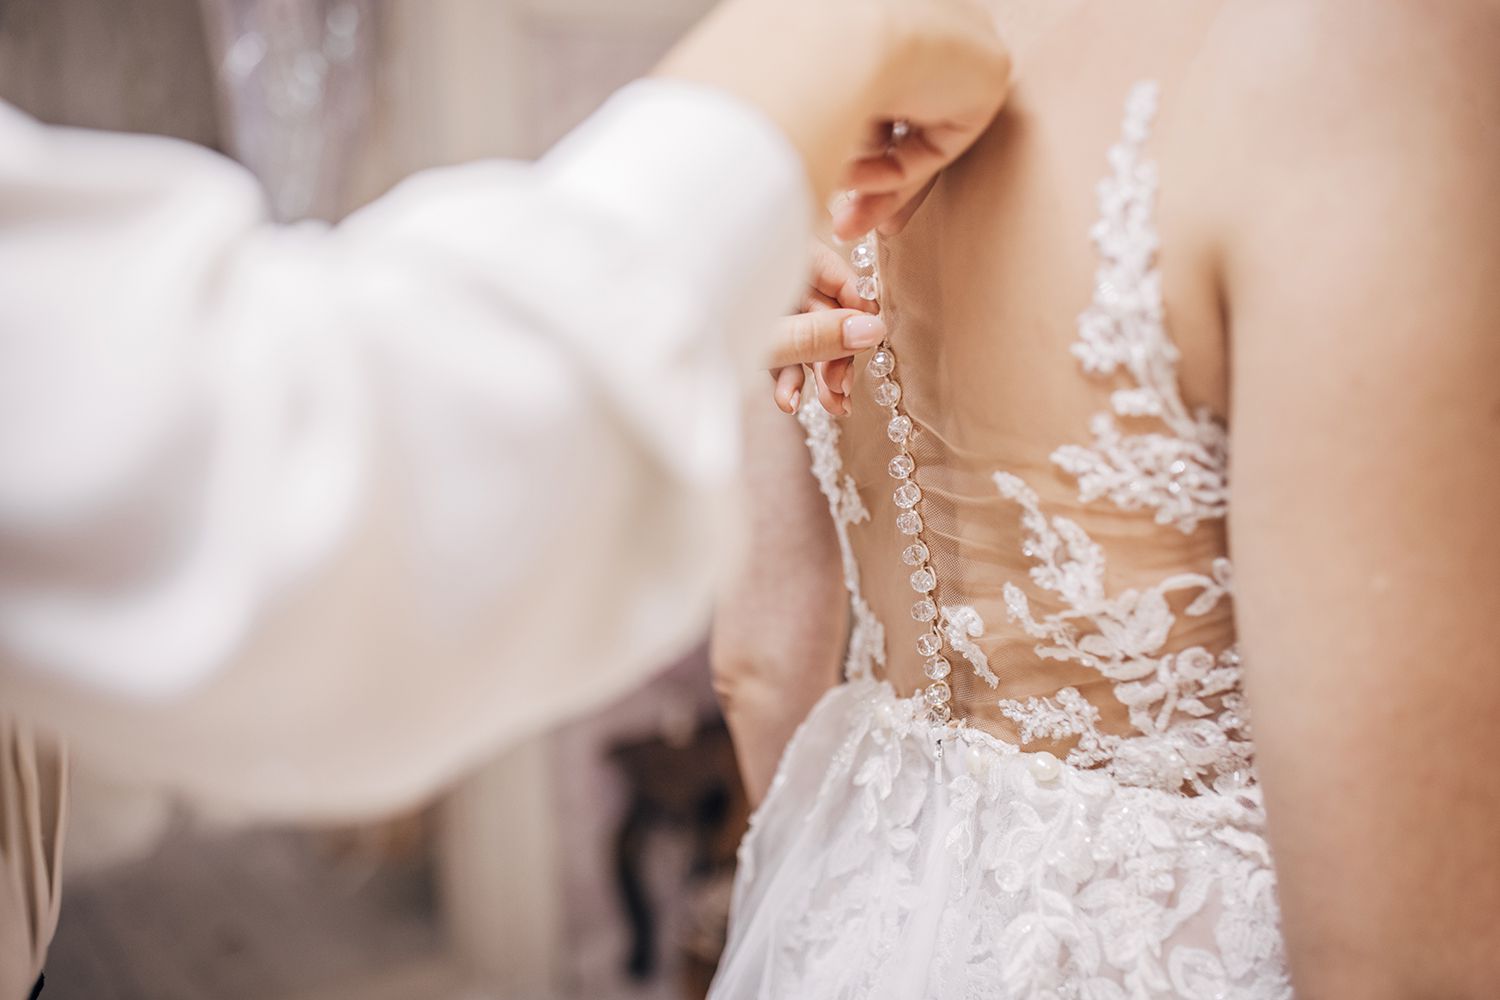 Bride wearing her wedding dress, while her female dress designer making final adjustments on dress.